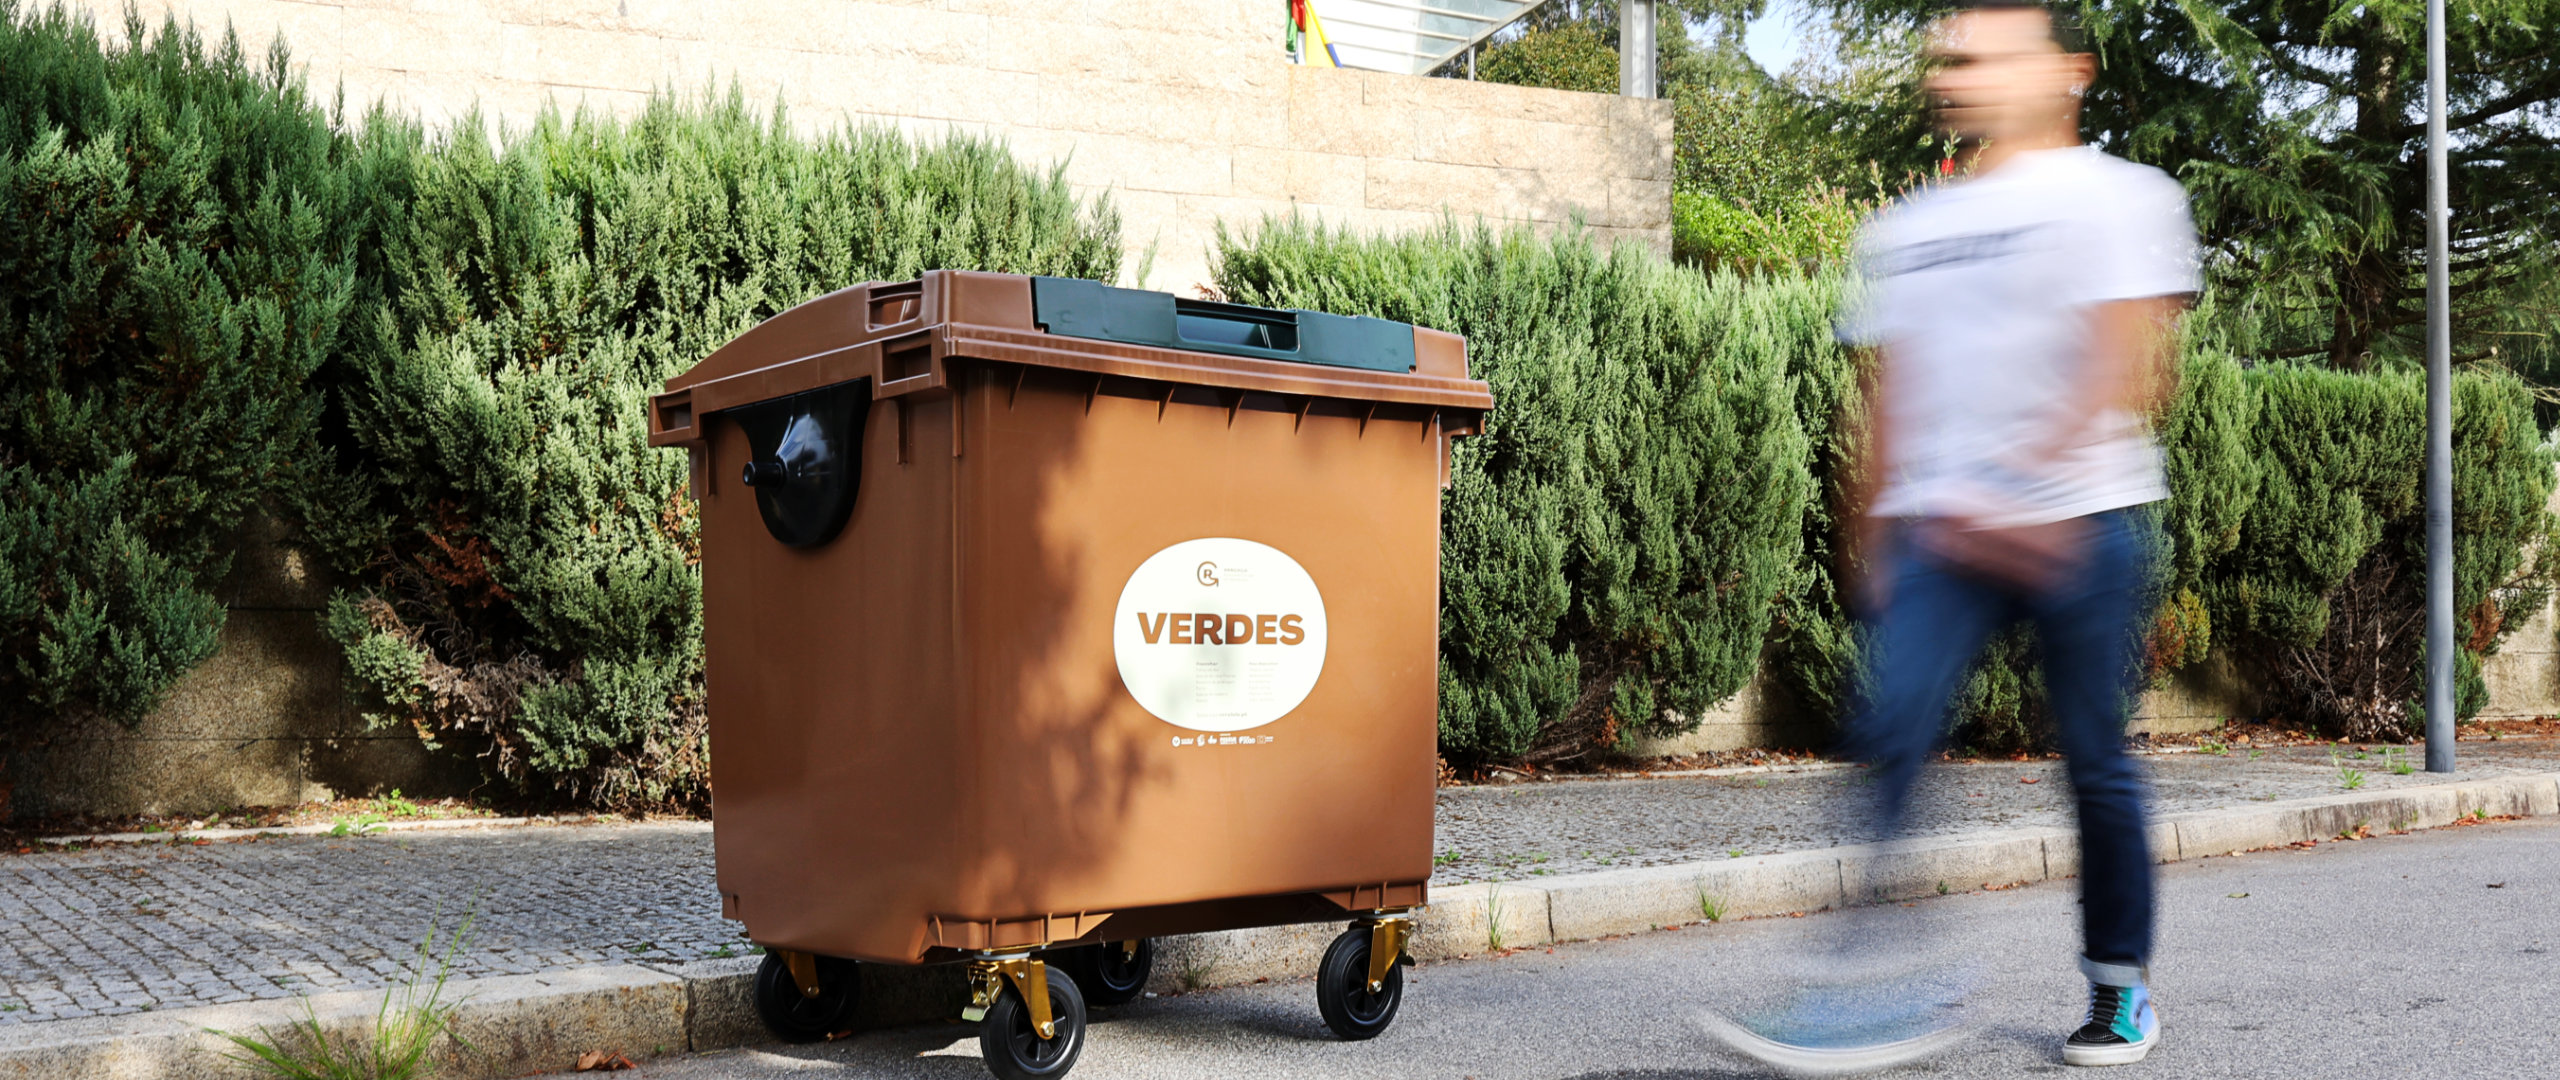 Contentores lixo de quatro rodas para resíduos orgânicos e reciclagem